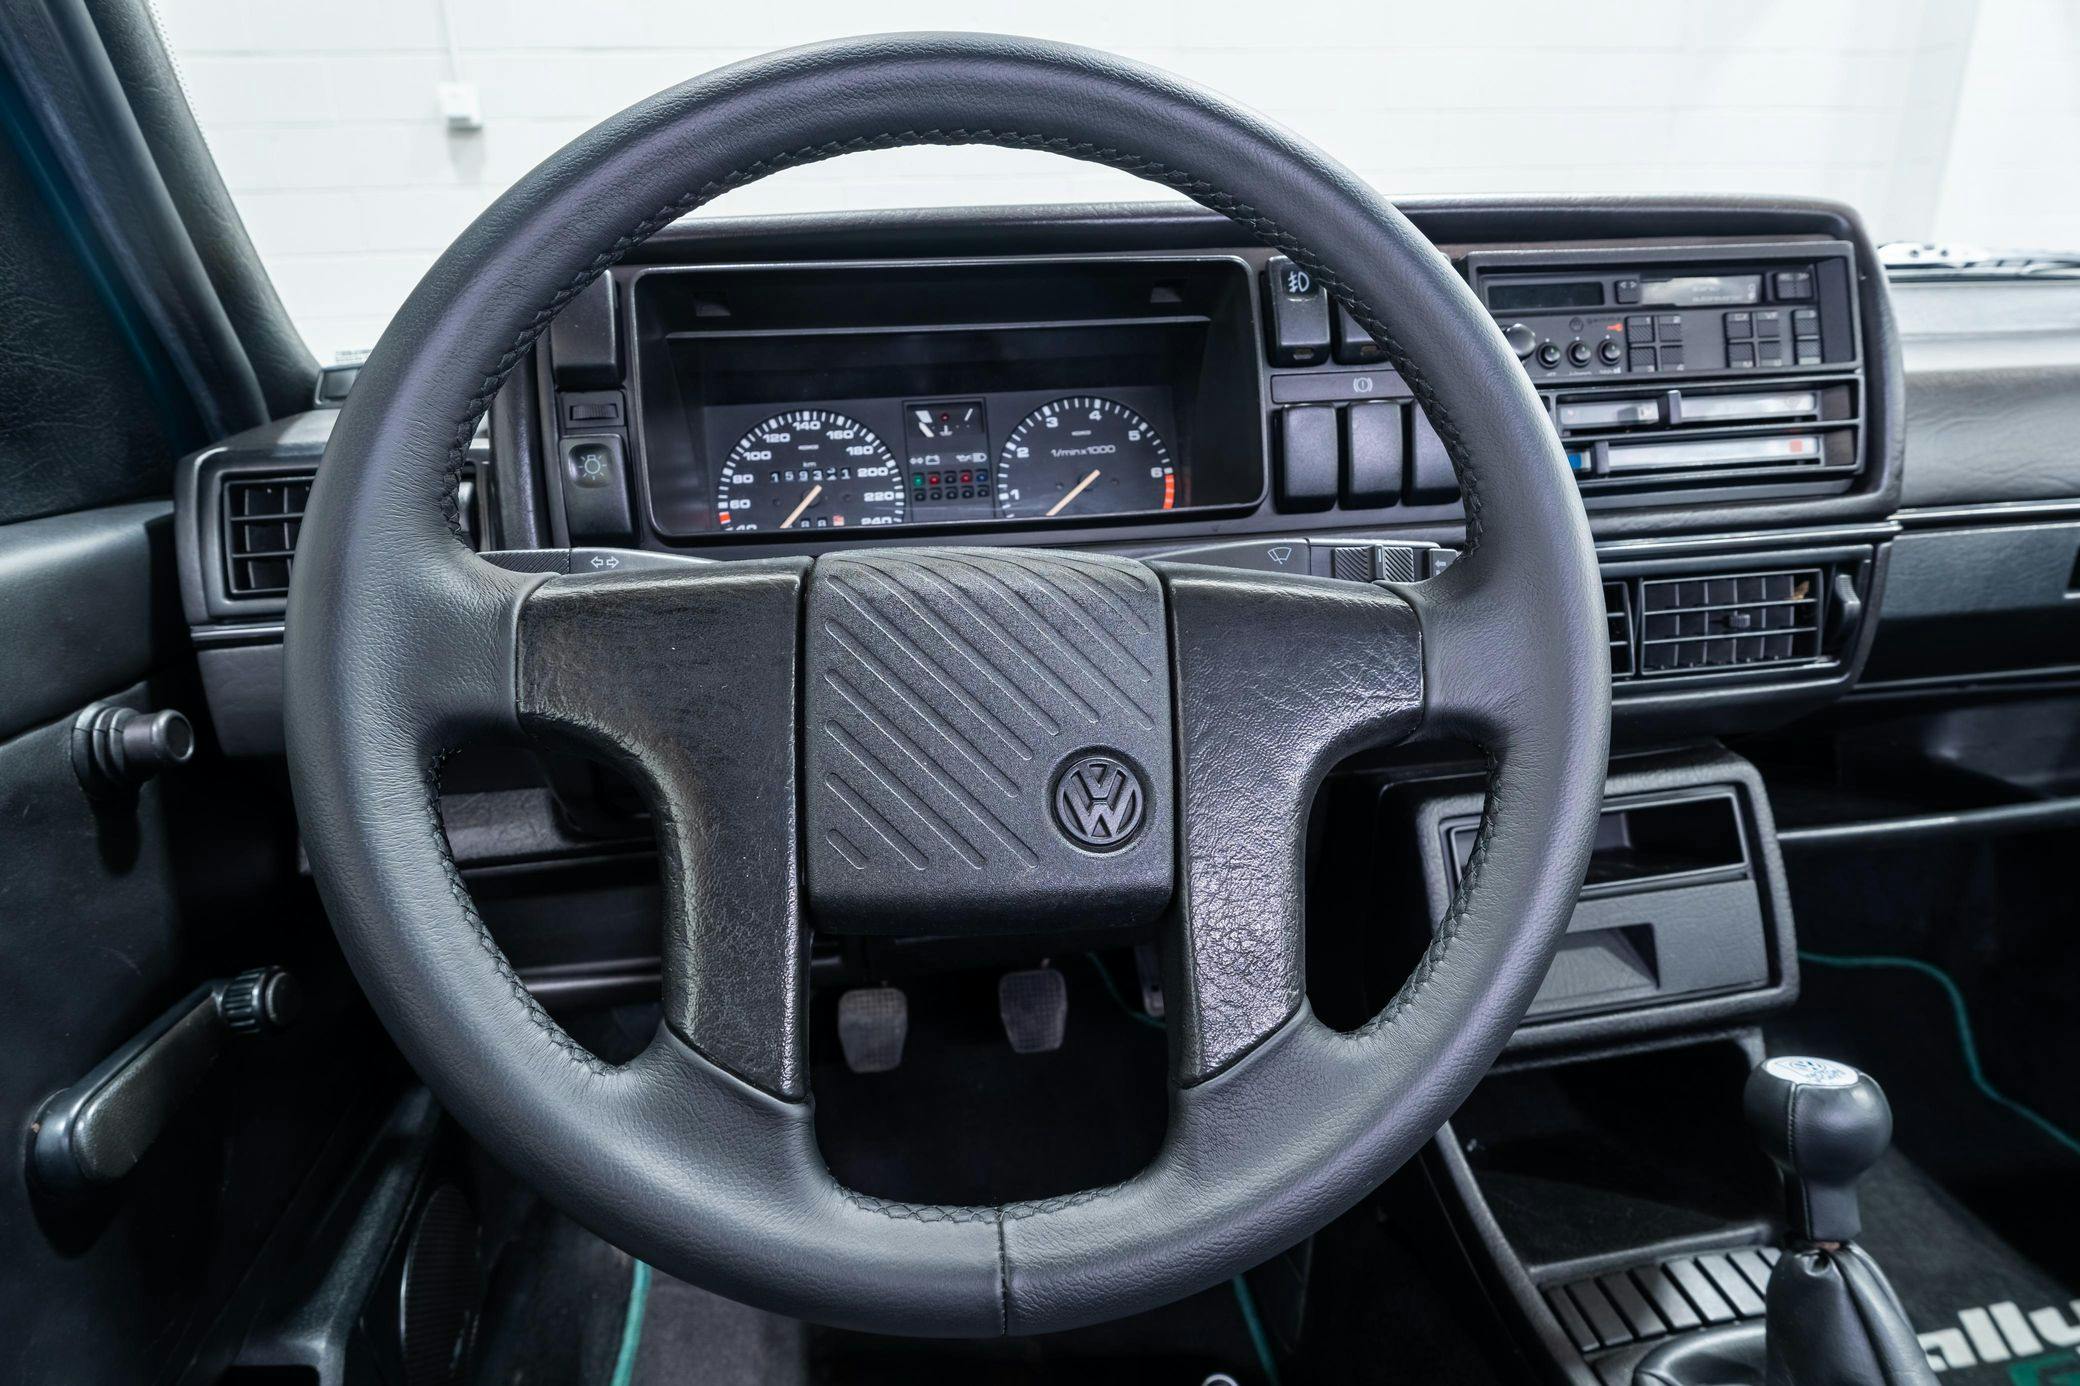 Volkswagen-G60-RallyeGolf interior steering wheel